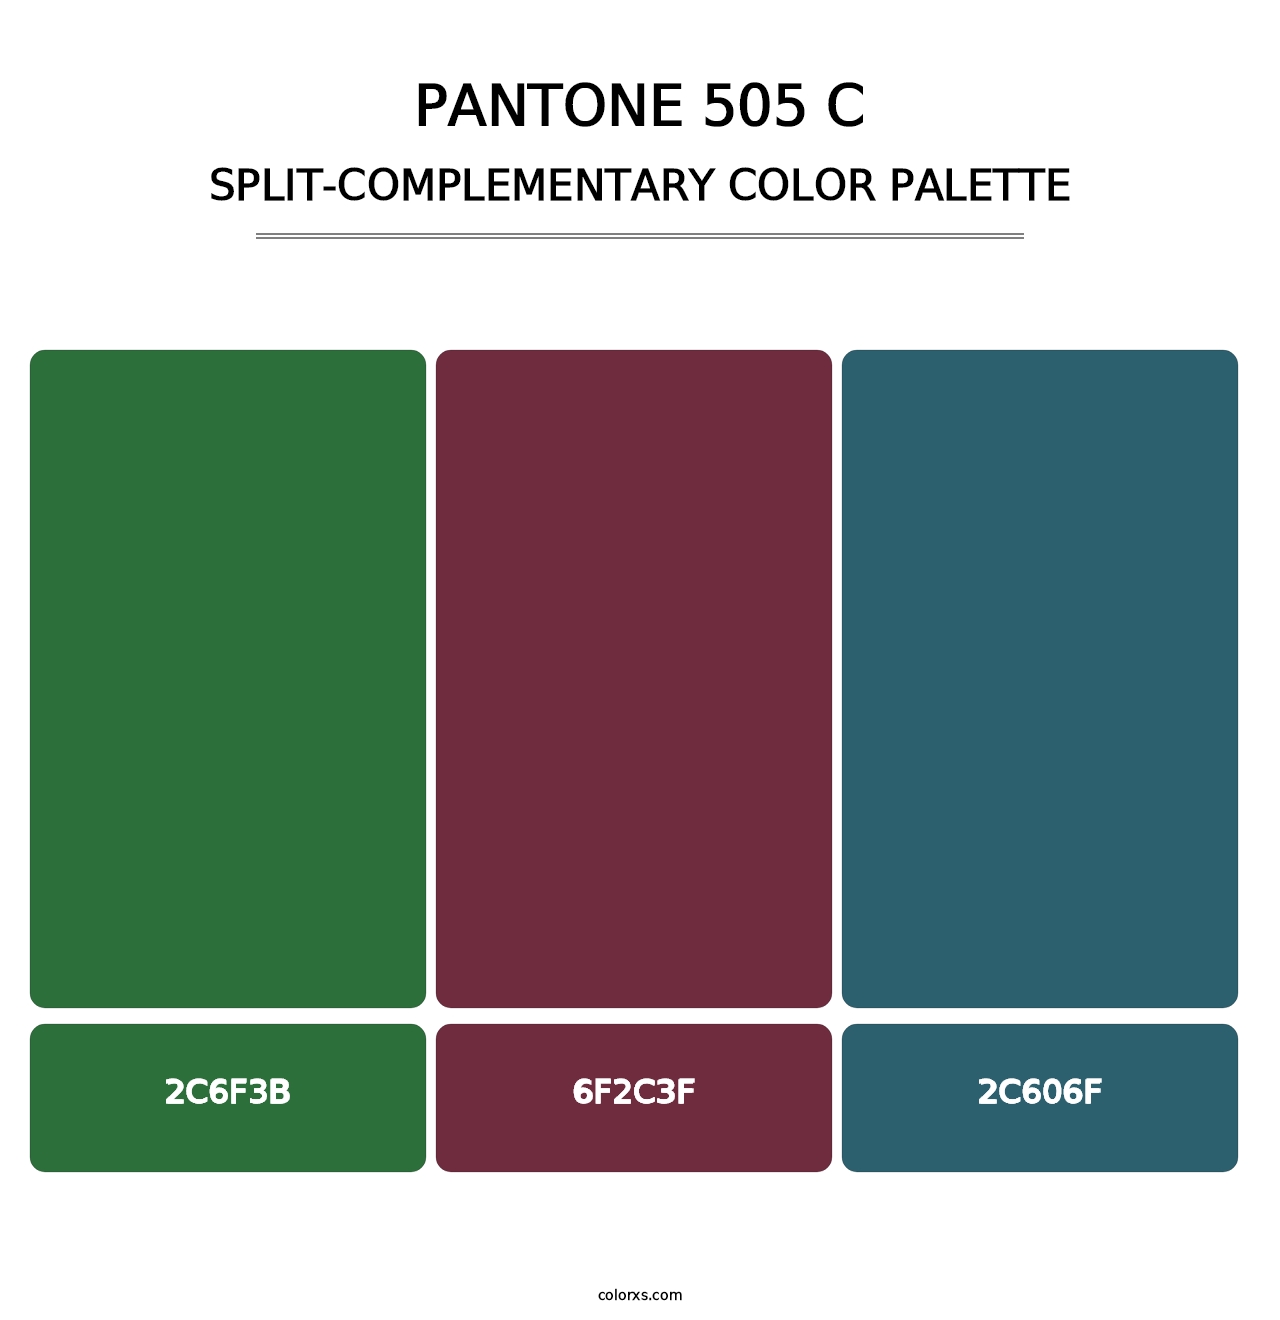 PANTONE 505 C - Split-Complementary Color Palette